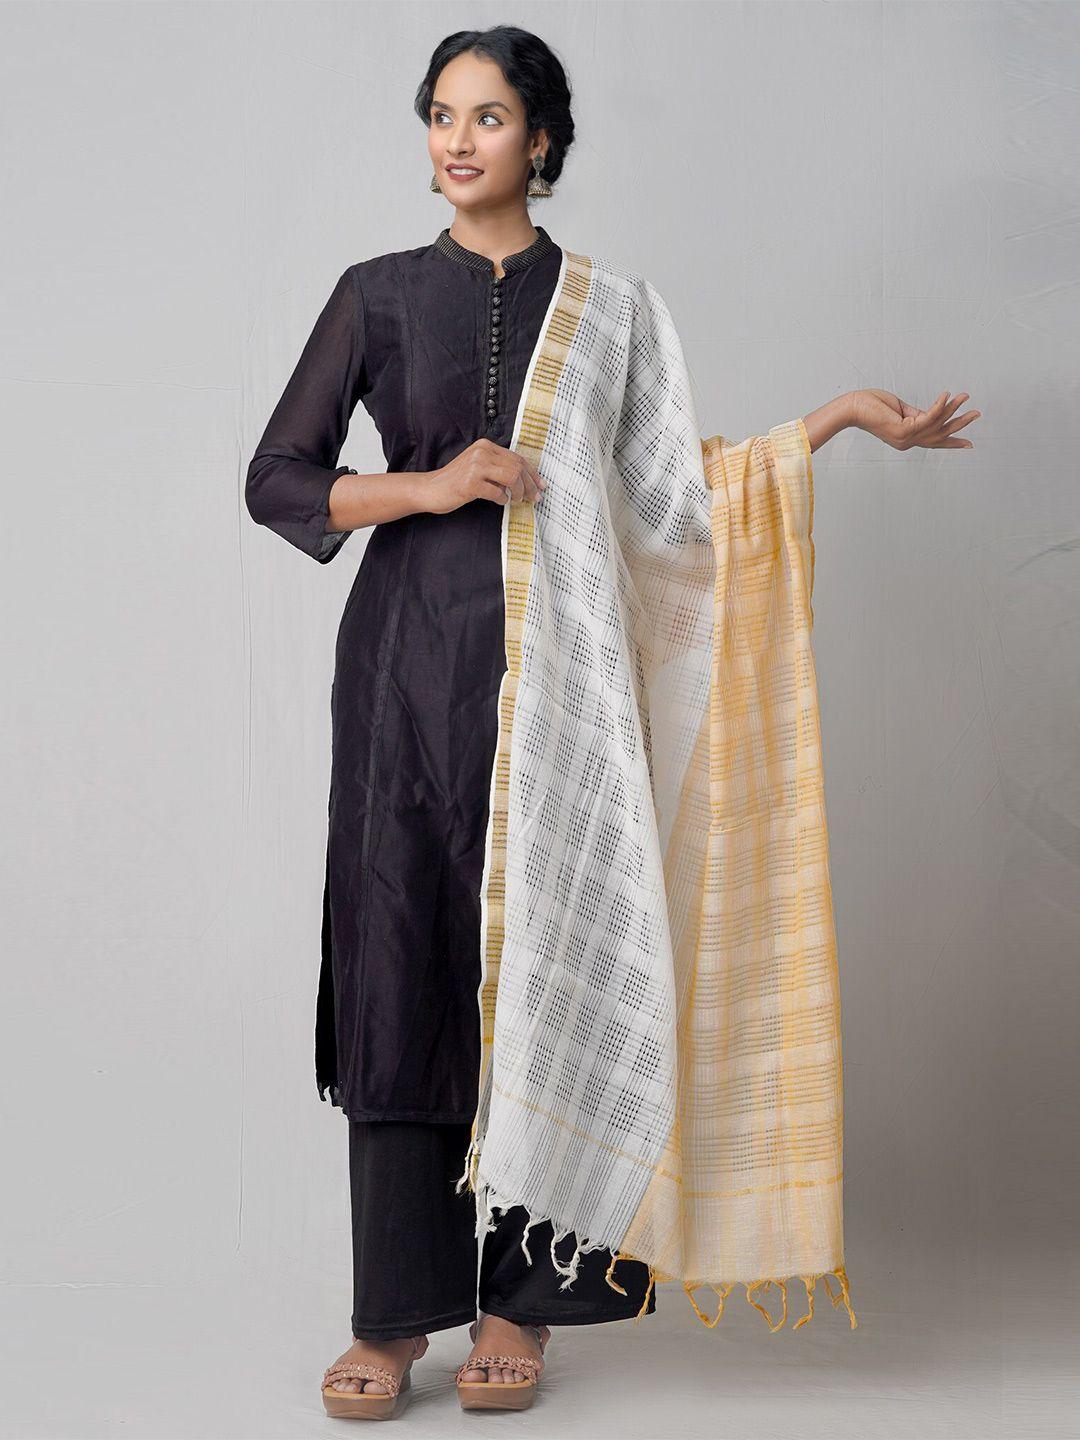 unnati silks brown & white ethnic motifs woven design pure cotton dupatta with zari